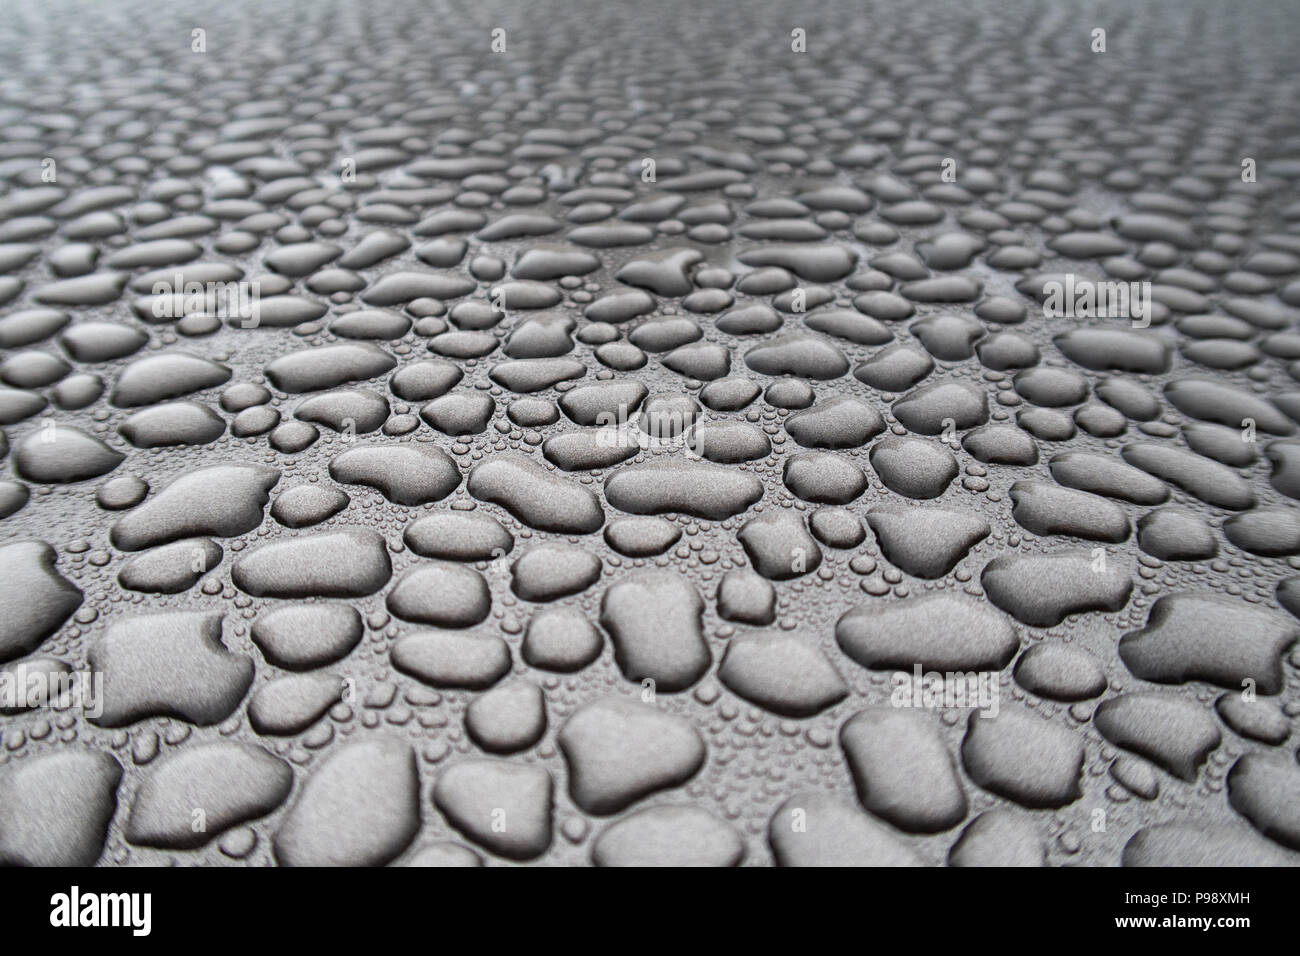 Regenwasser hat unzählige einzelne Perlen von Wasser, die angezeigt werden, versammelt zu haben und in der Ferne verblassen gebildet Stockfoto